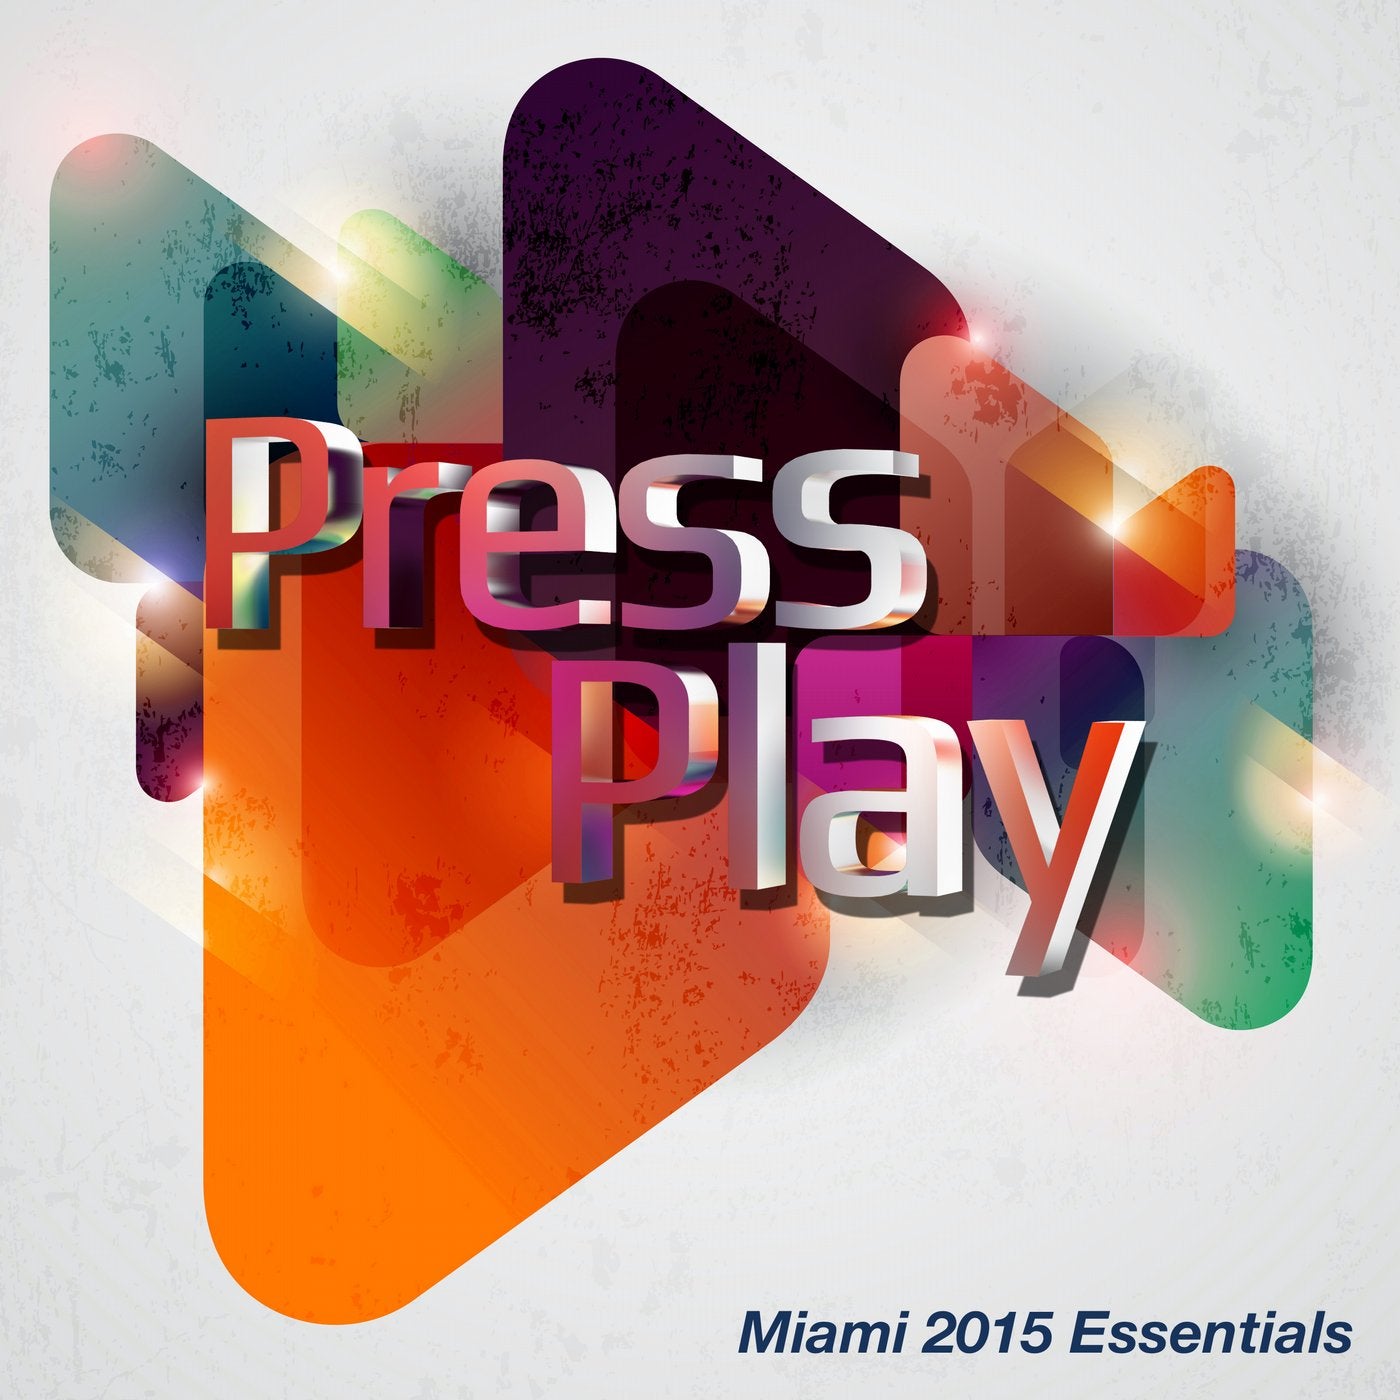 Miami 2015 Essentials